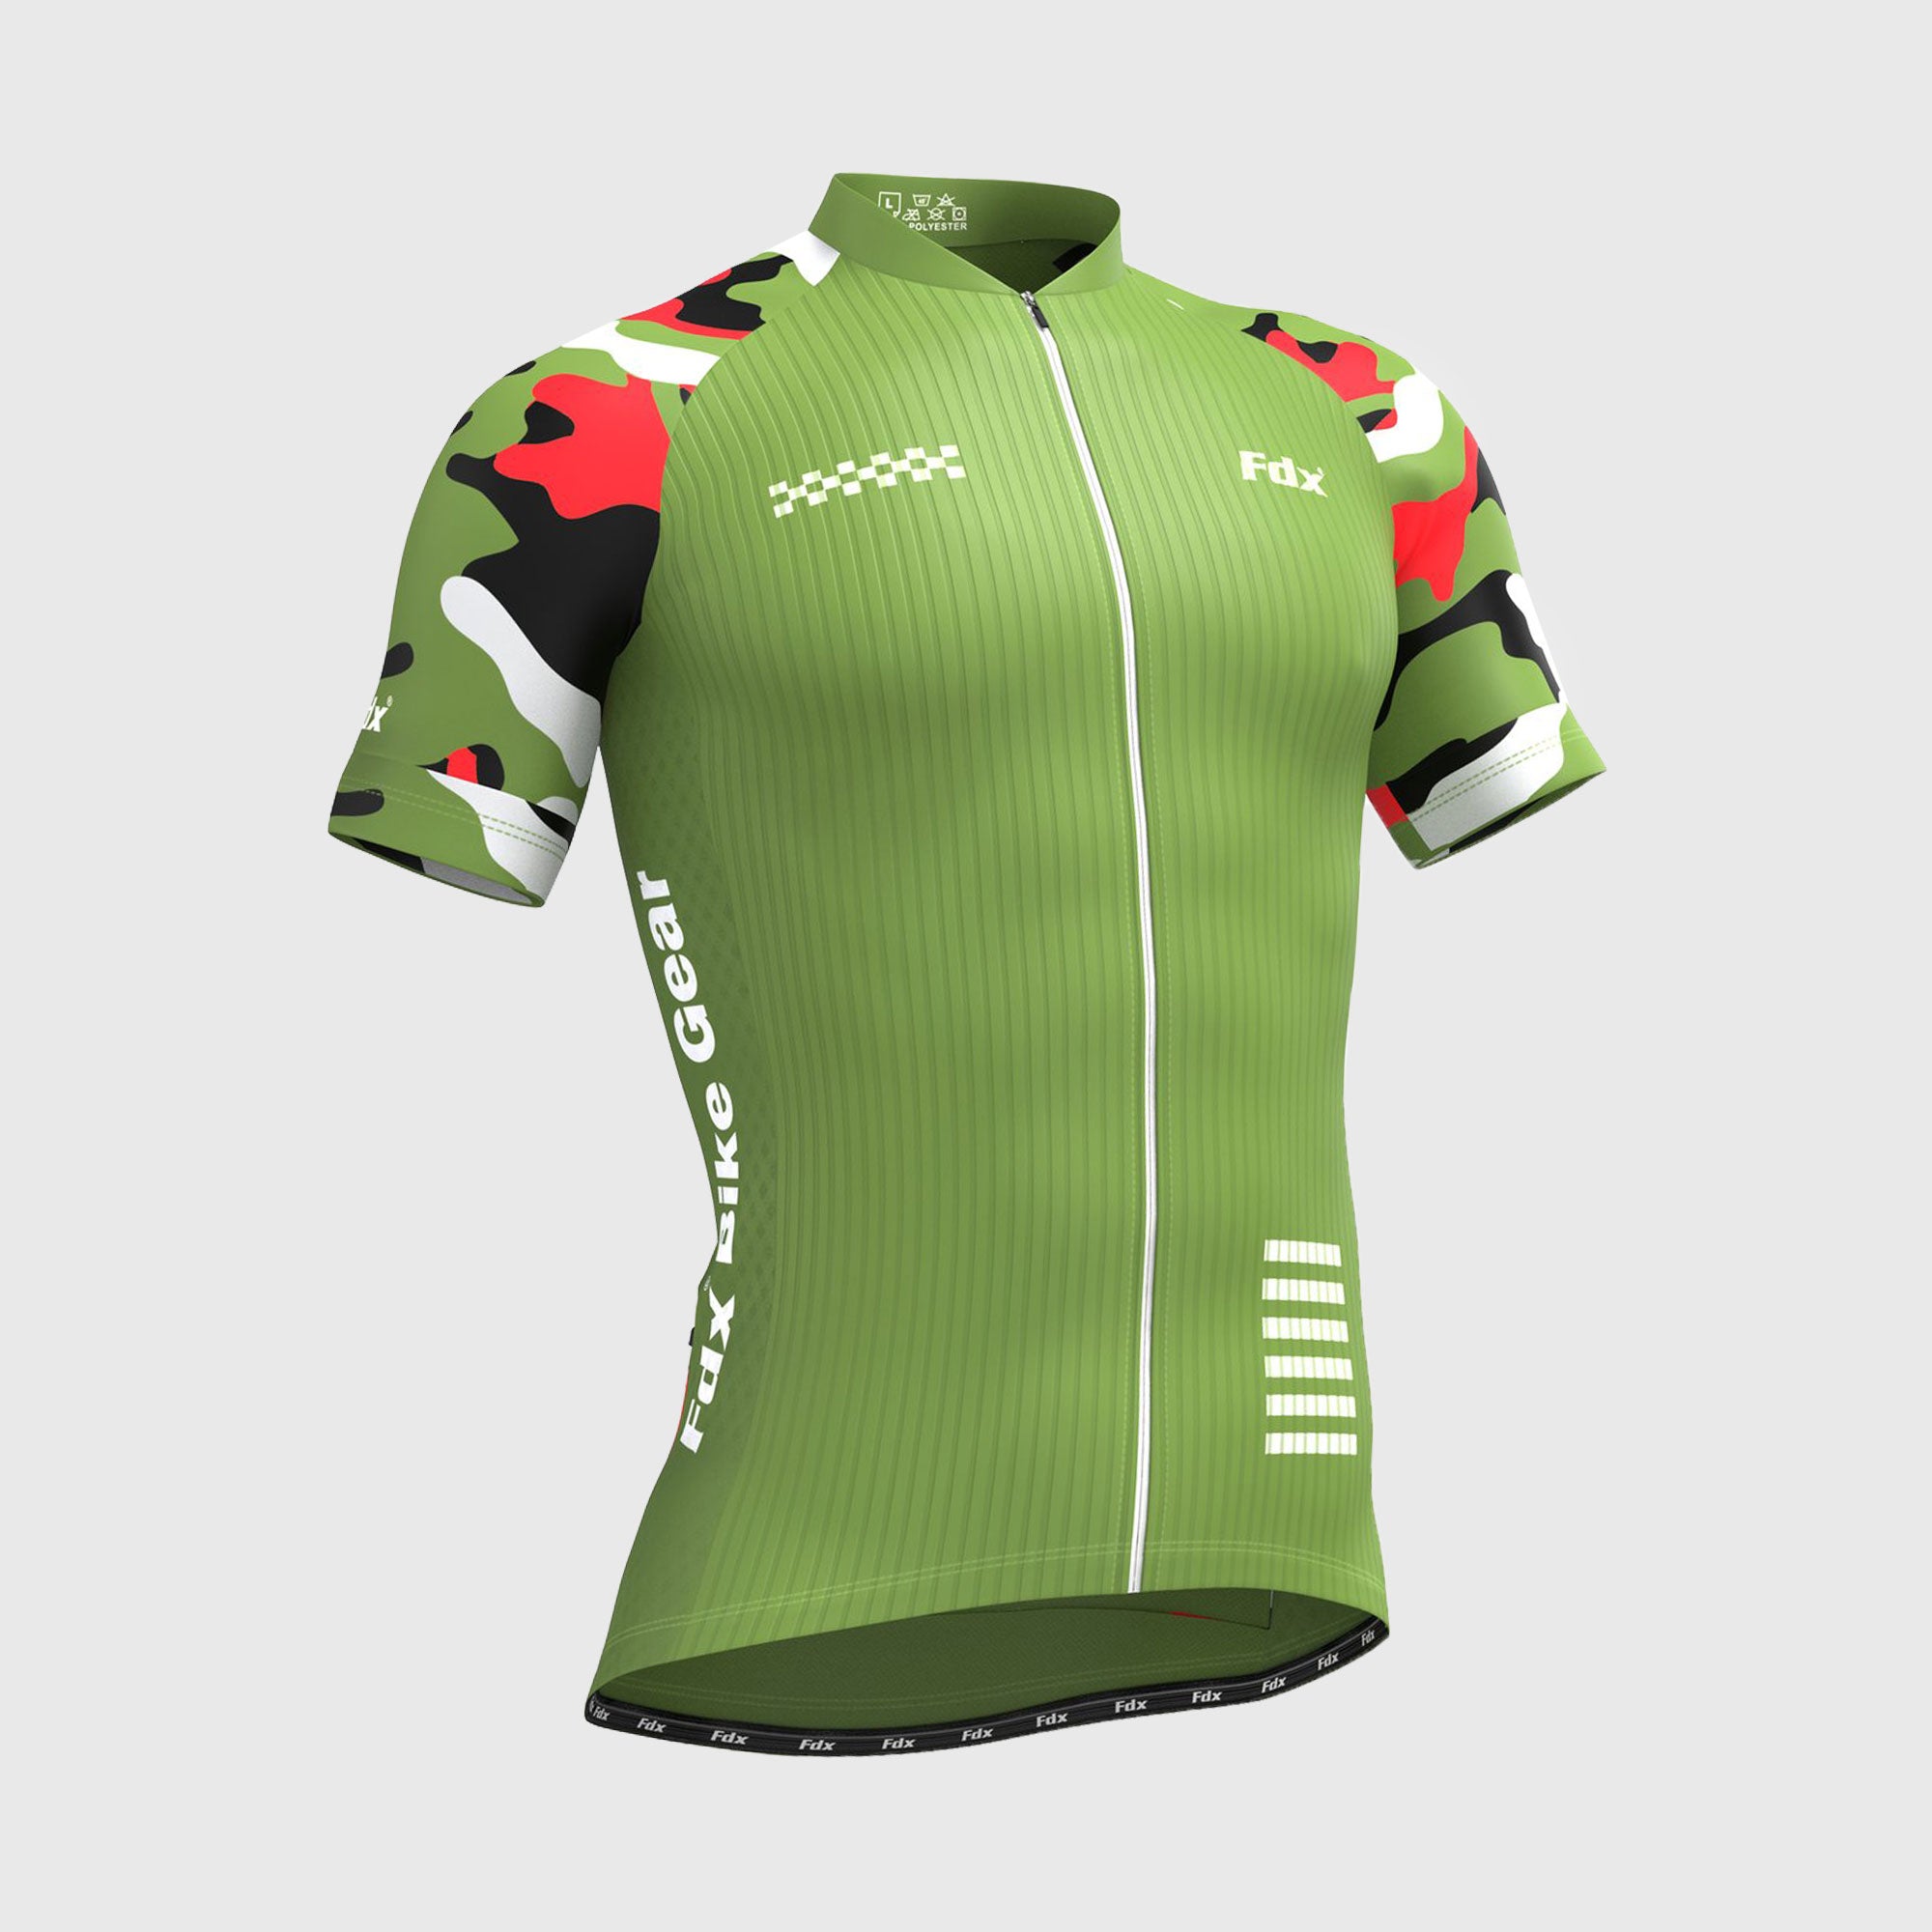 Fdx Mens Green Short Sleeve Cycling Jersey for Summer Best Road Bike Wear Top Light Weight, Full Zipper, Pockets & Hi-viz Reflectors - Camouflage